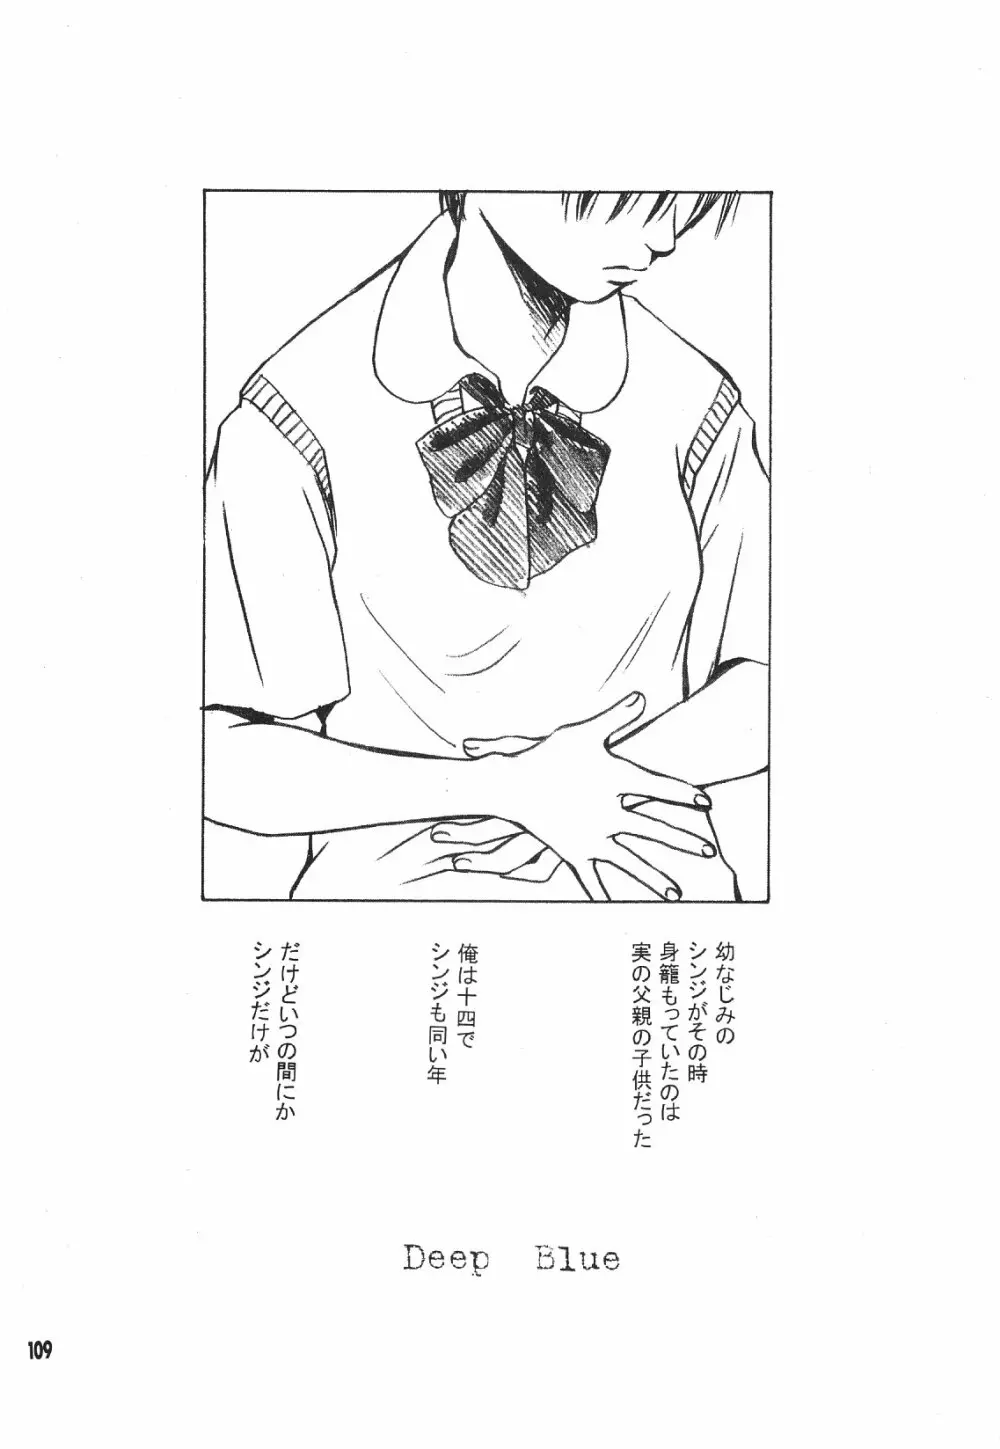 Maniac Juice 女シンジ再録集 ’96-’99 109ページ